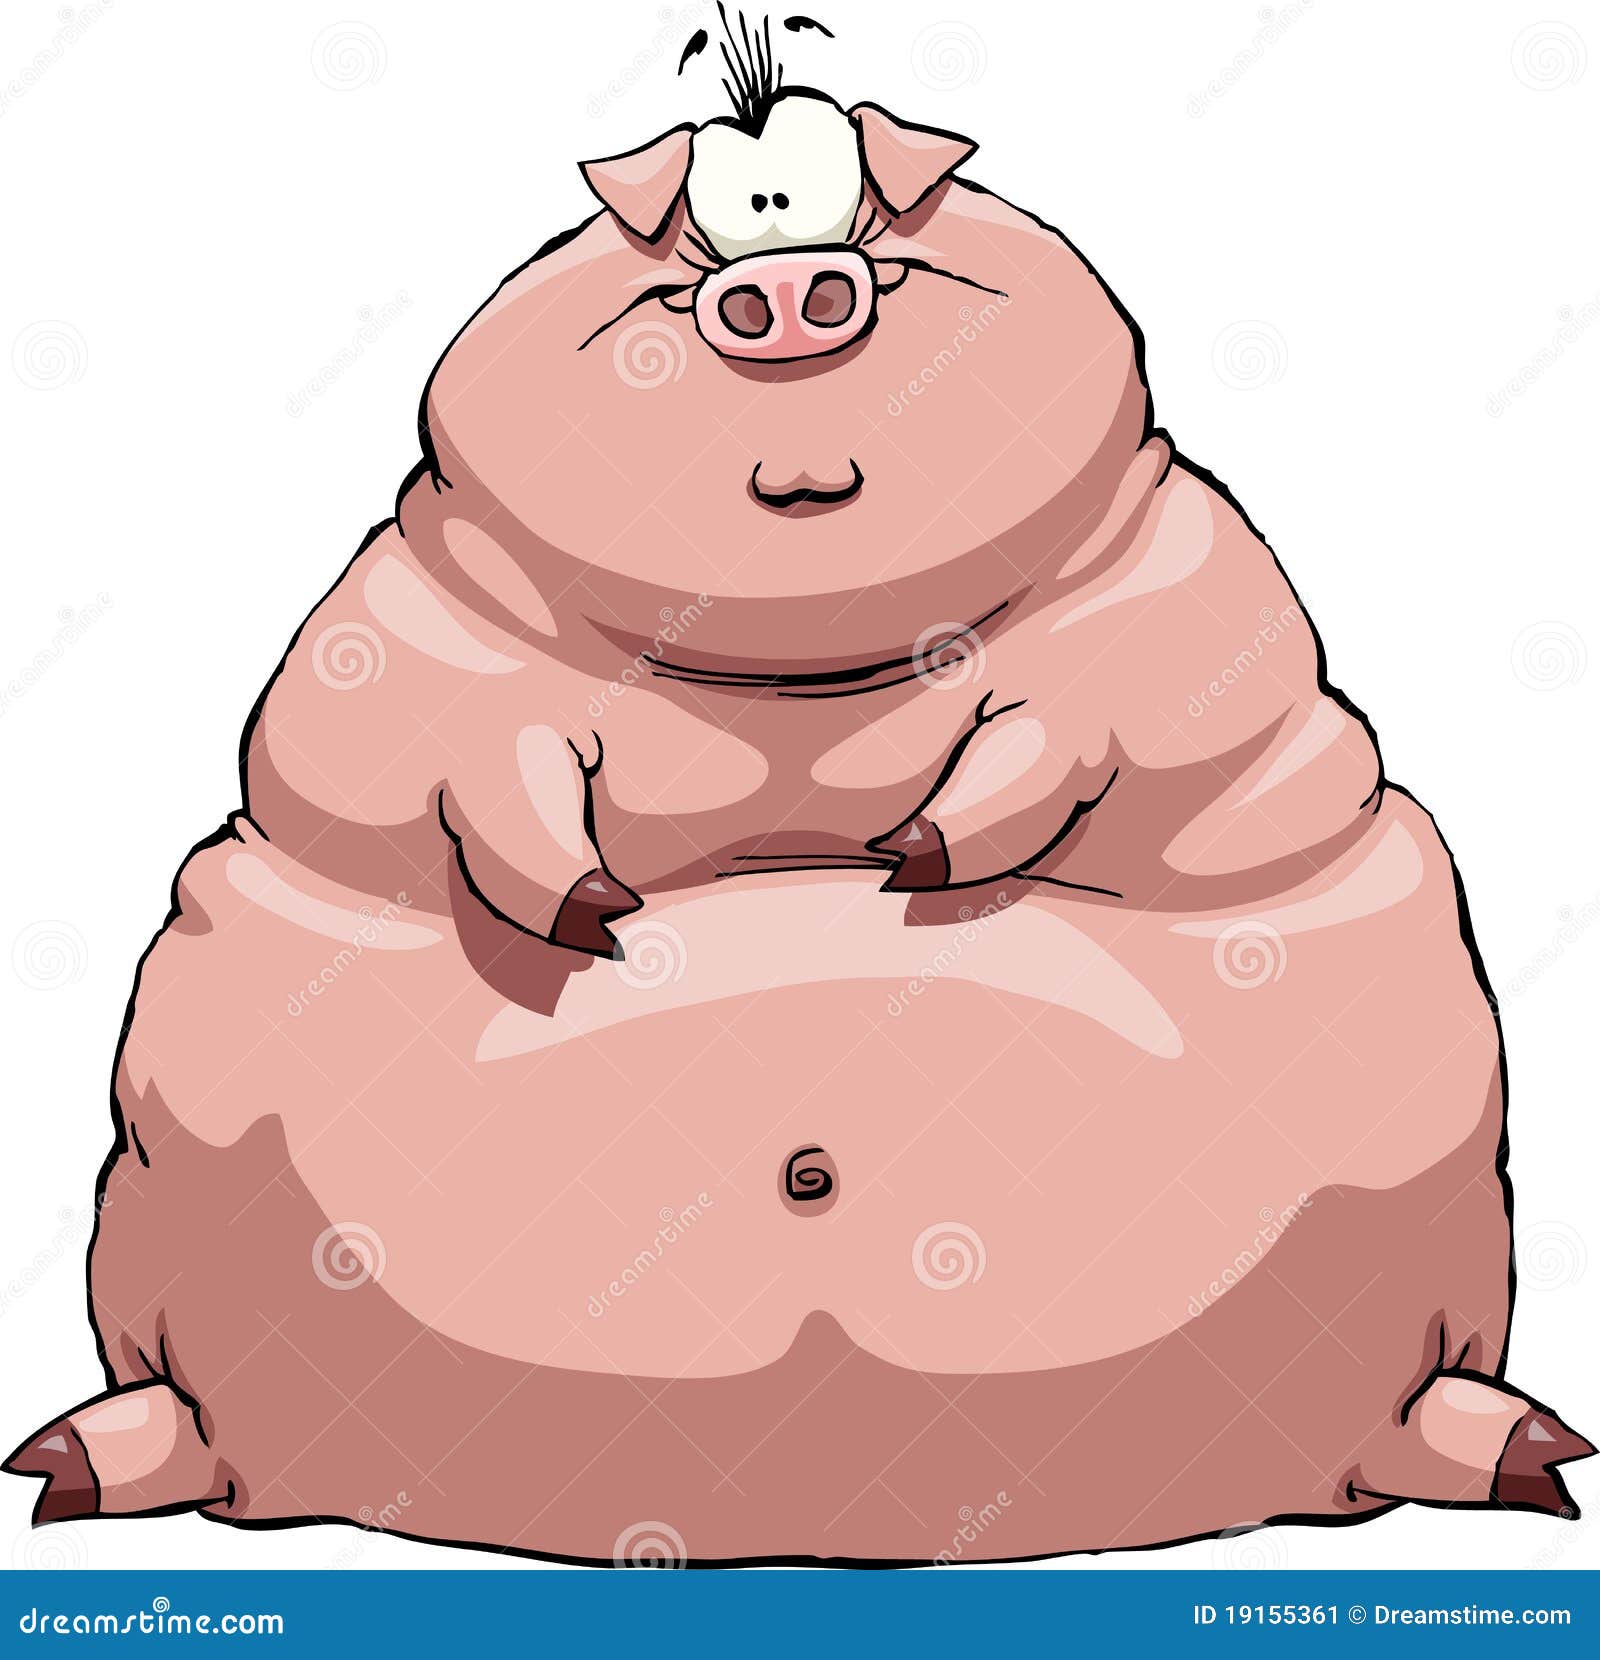 Fat pig bbw